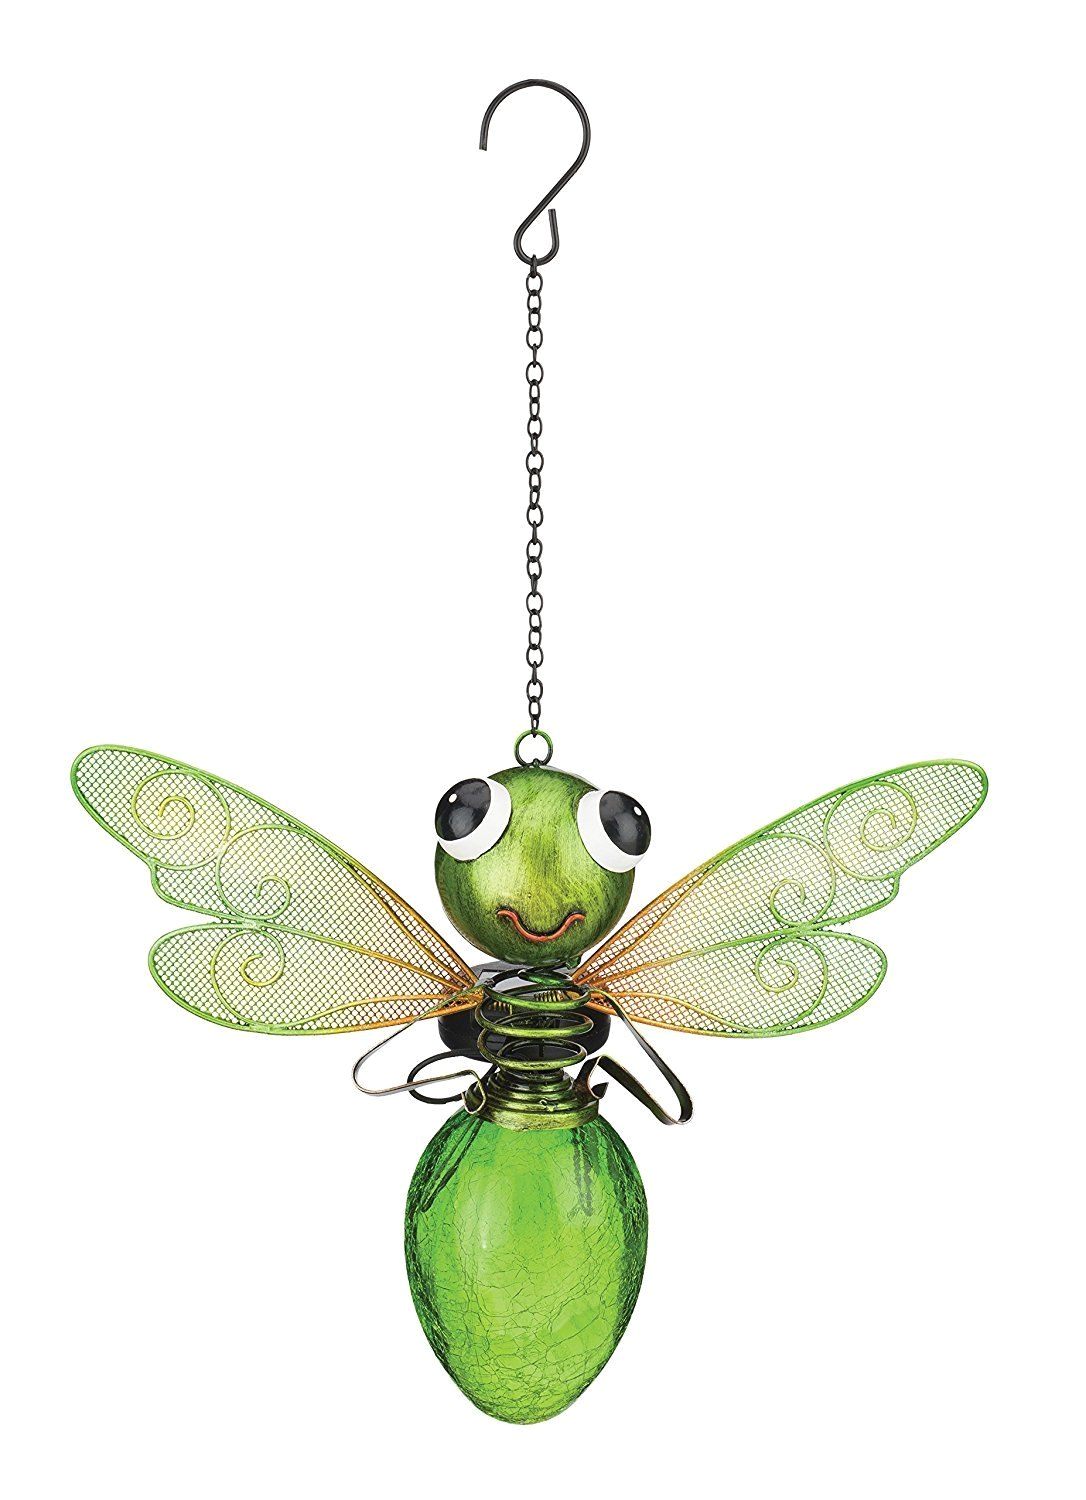 Regal Art and Gift Garden Decor Regal Art Gift solar Dragonfly Lantern Green Regal Art Gift